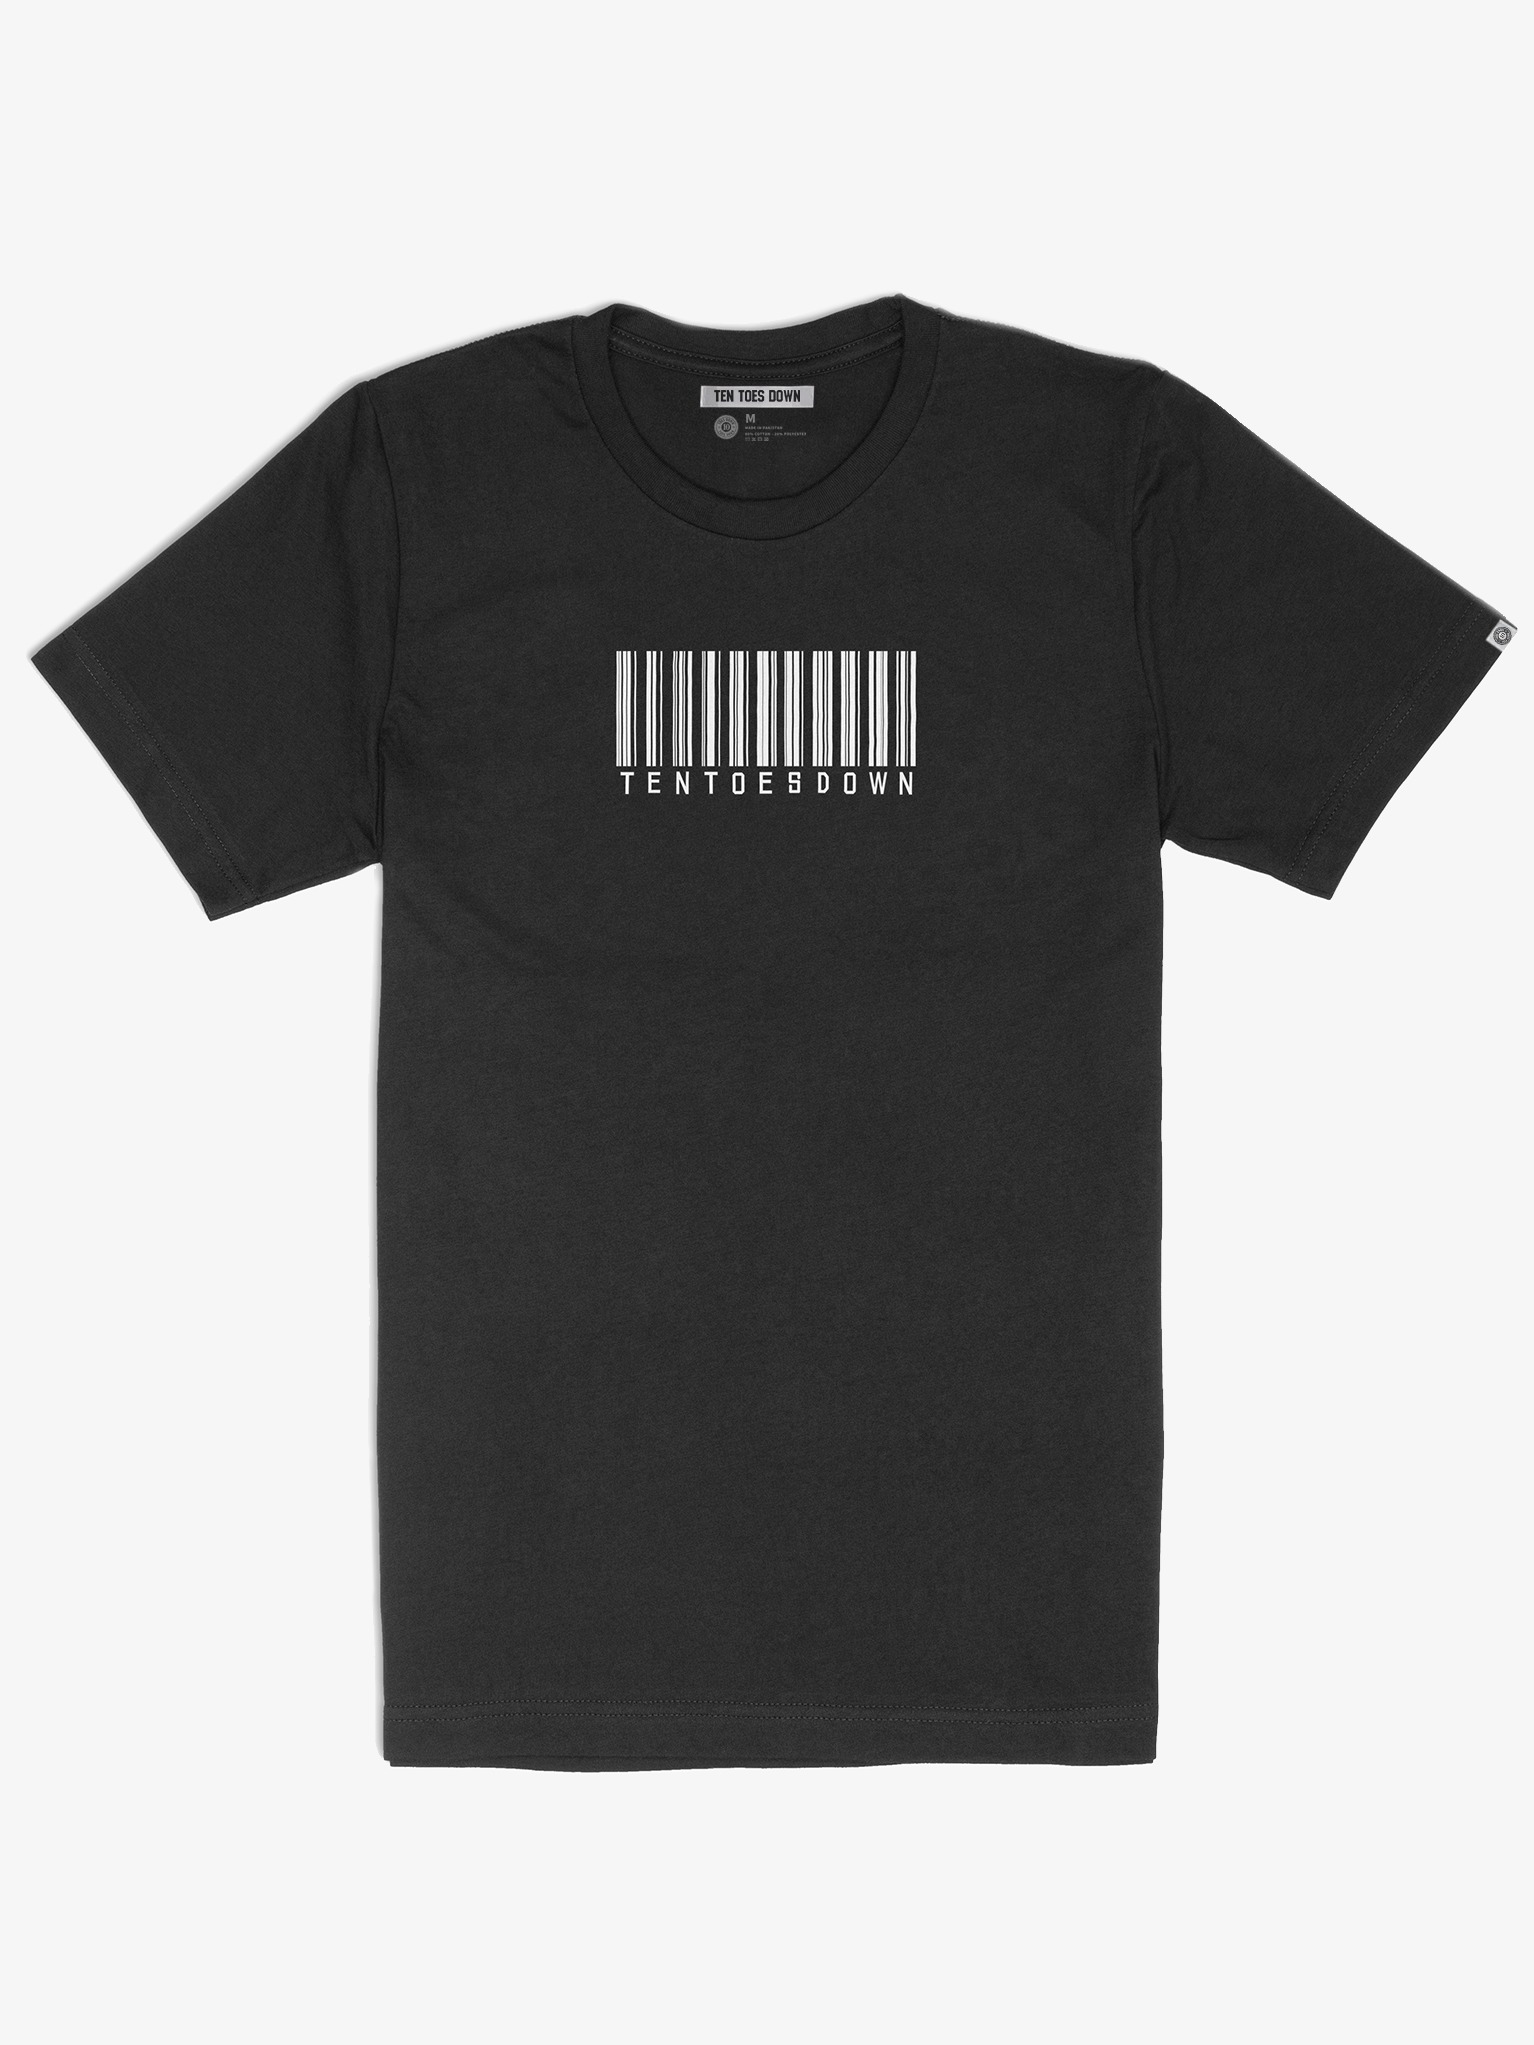 Ten Toes Down Barcode Black T-Shirt | Ten Toes Down